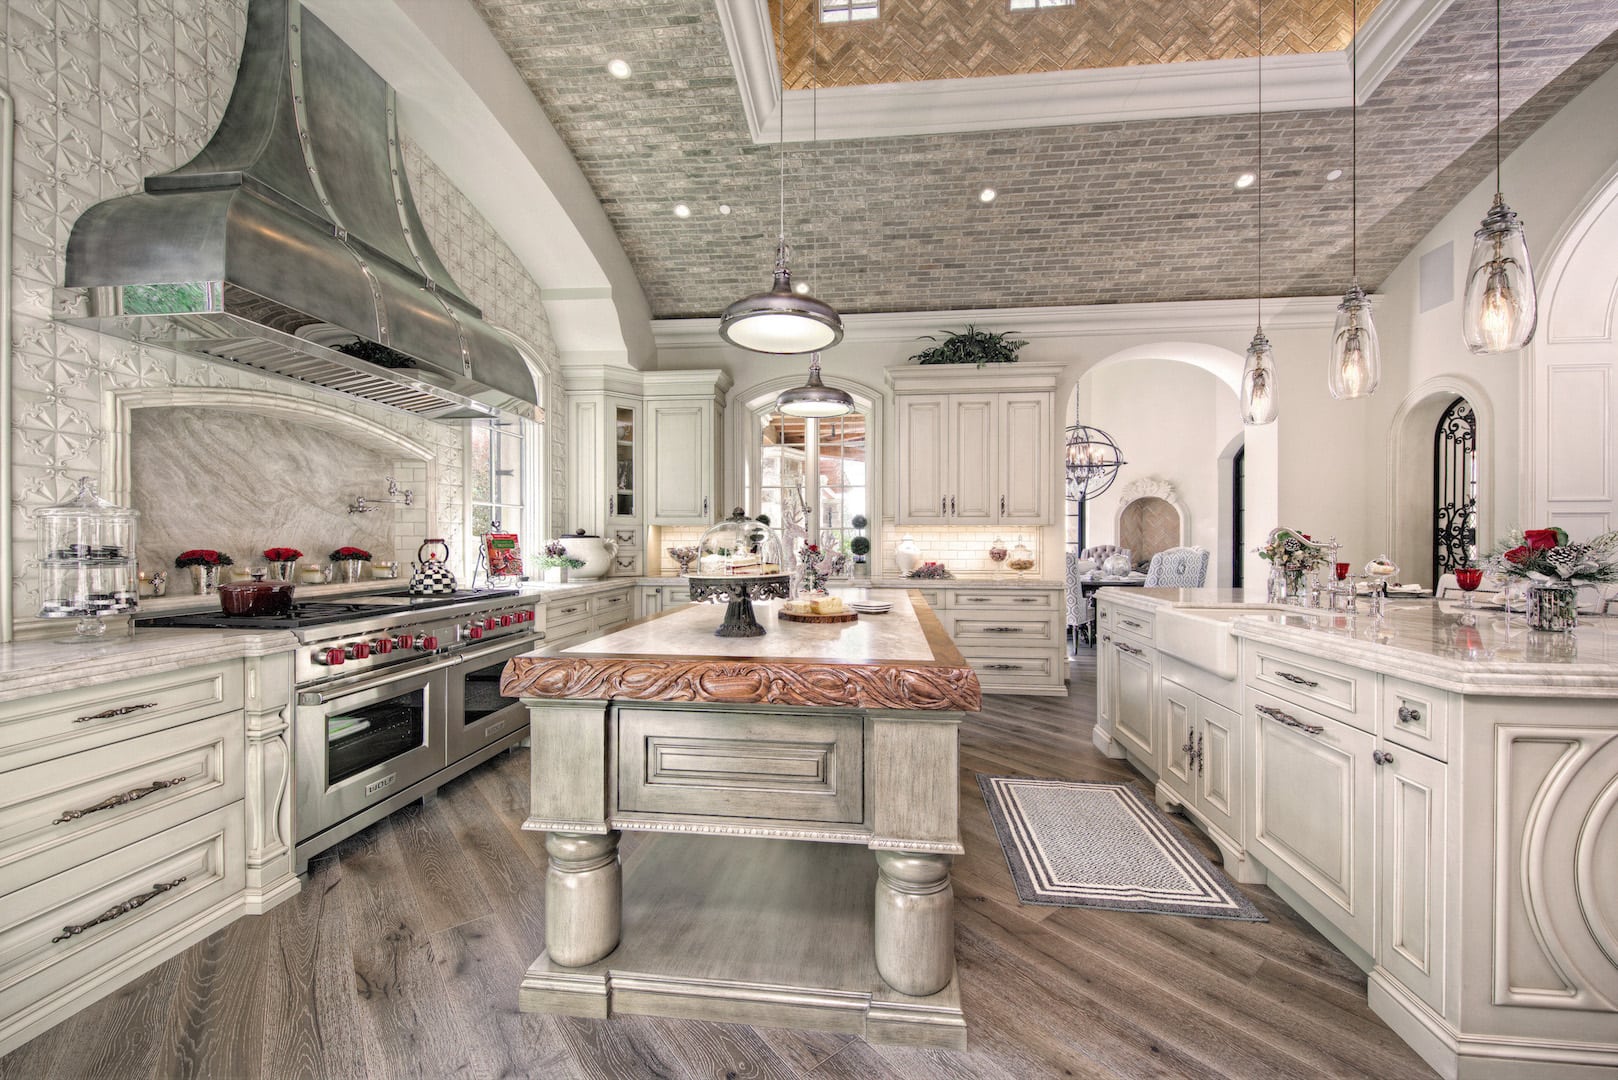  luxury kitchen interior design